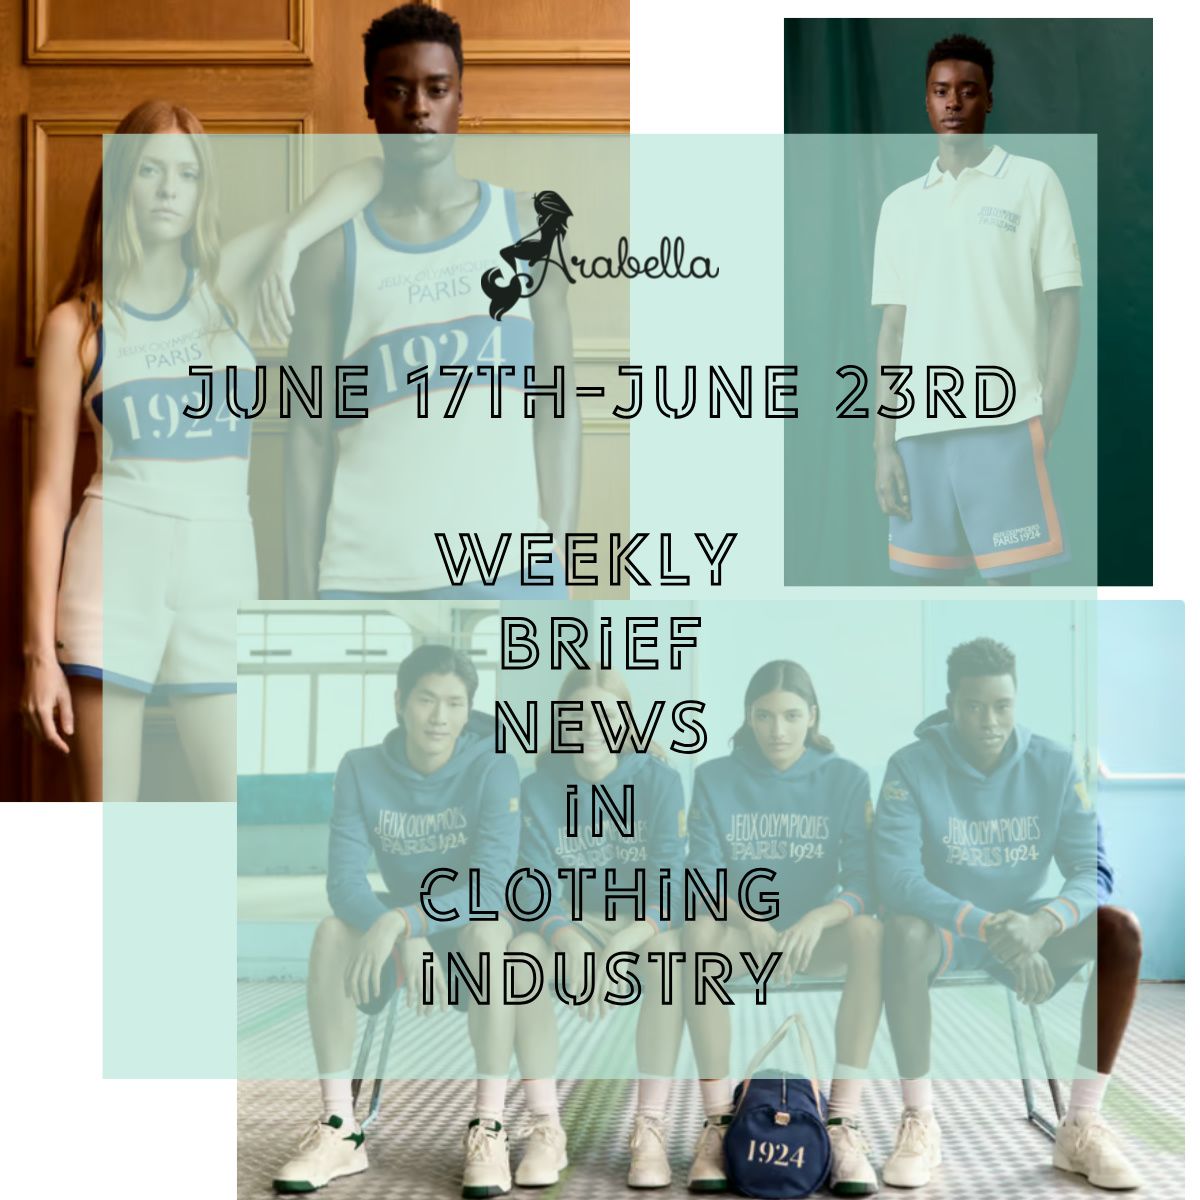 Արաբելլա |Պատրաստվեք մեծ խաղի համար. հագուստի արդյունաբերության շաբաթական կարճ նորություններ հունիսի 17-23-ը